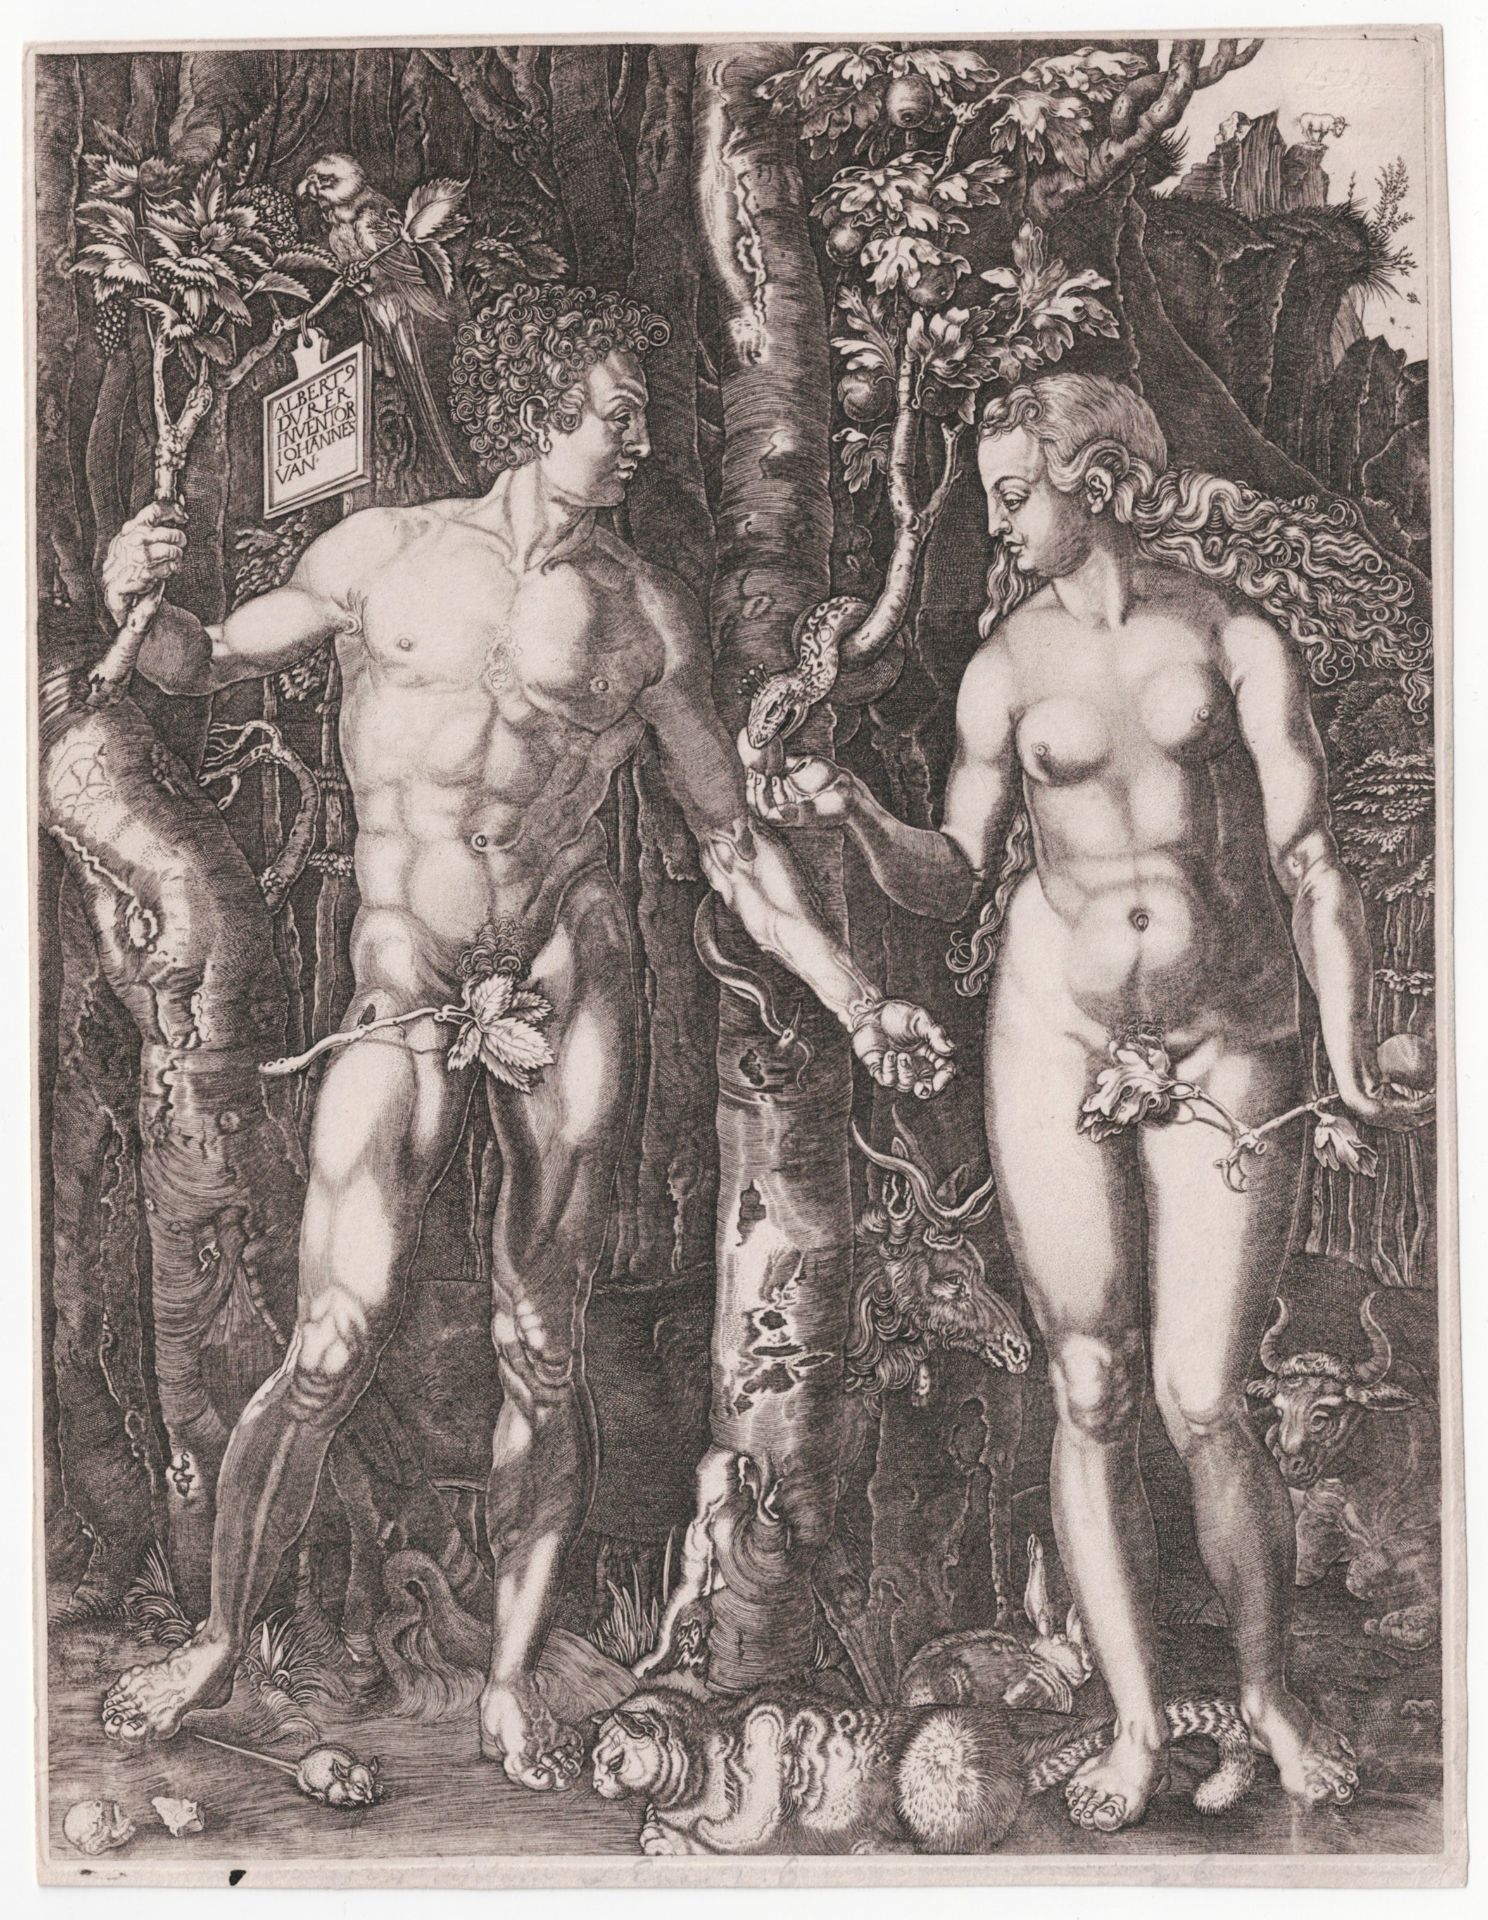 Albrecht Dürer (1471-1528), Jan Baptist Goossens (born Antwerp 1645,1655, died Antwerp after 1702)